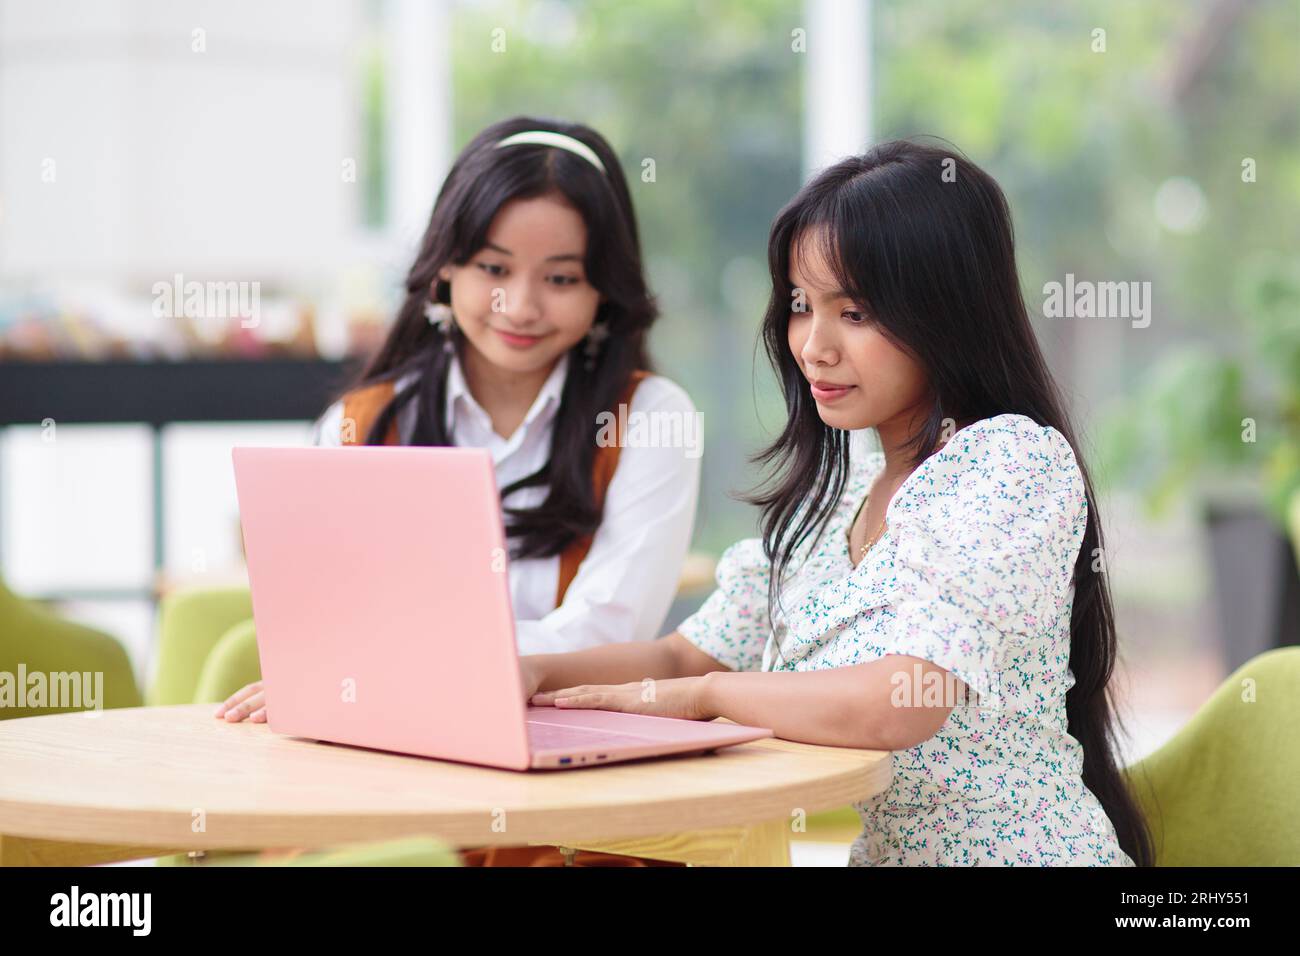 Belle adolescente avec ordinateur portable. Jeunes amies travaillant sur ordinateur dans le restaurant. Étudiant faisant ses devoirs. Travail en ligne freelance. Banque D'Images